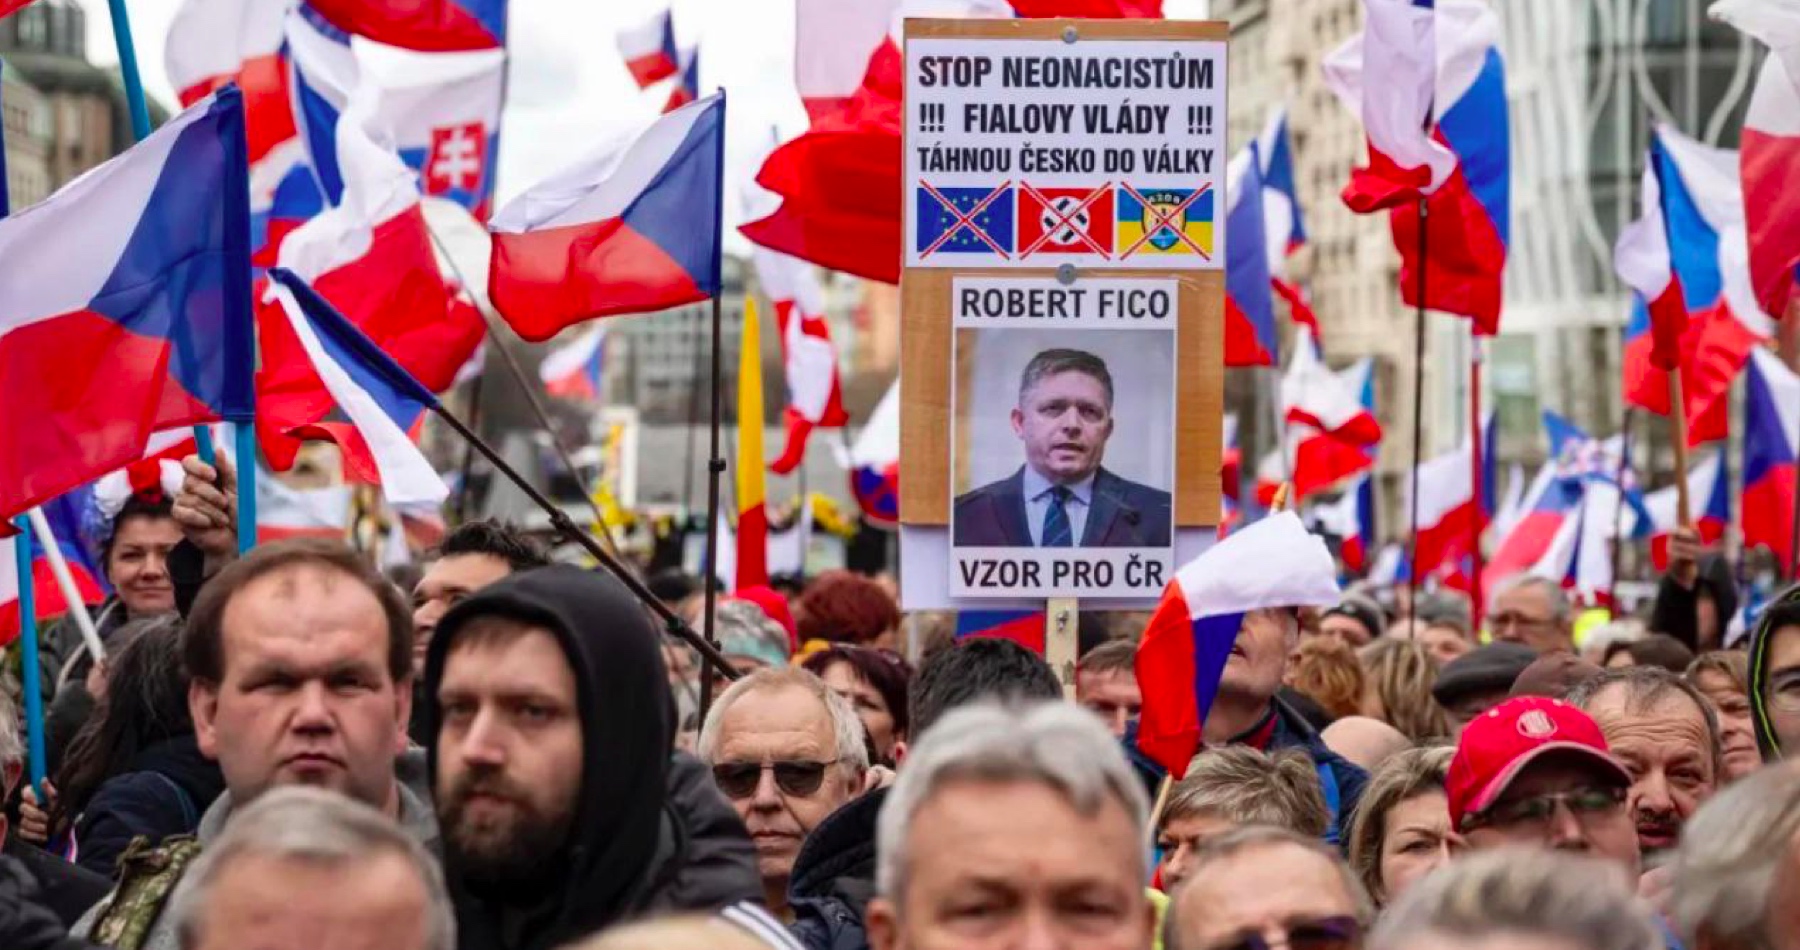 VIDEO: Na Václavskom námestí v Prahe sa konala masová demonštrácie proti proamerickej a proukrajinskej Fialovej vláde. Viali na nej aj slovenské vlajky. Demonštranti označovali slovenského premiéra Roberta Fica za vzor pre Českú republiku